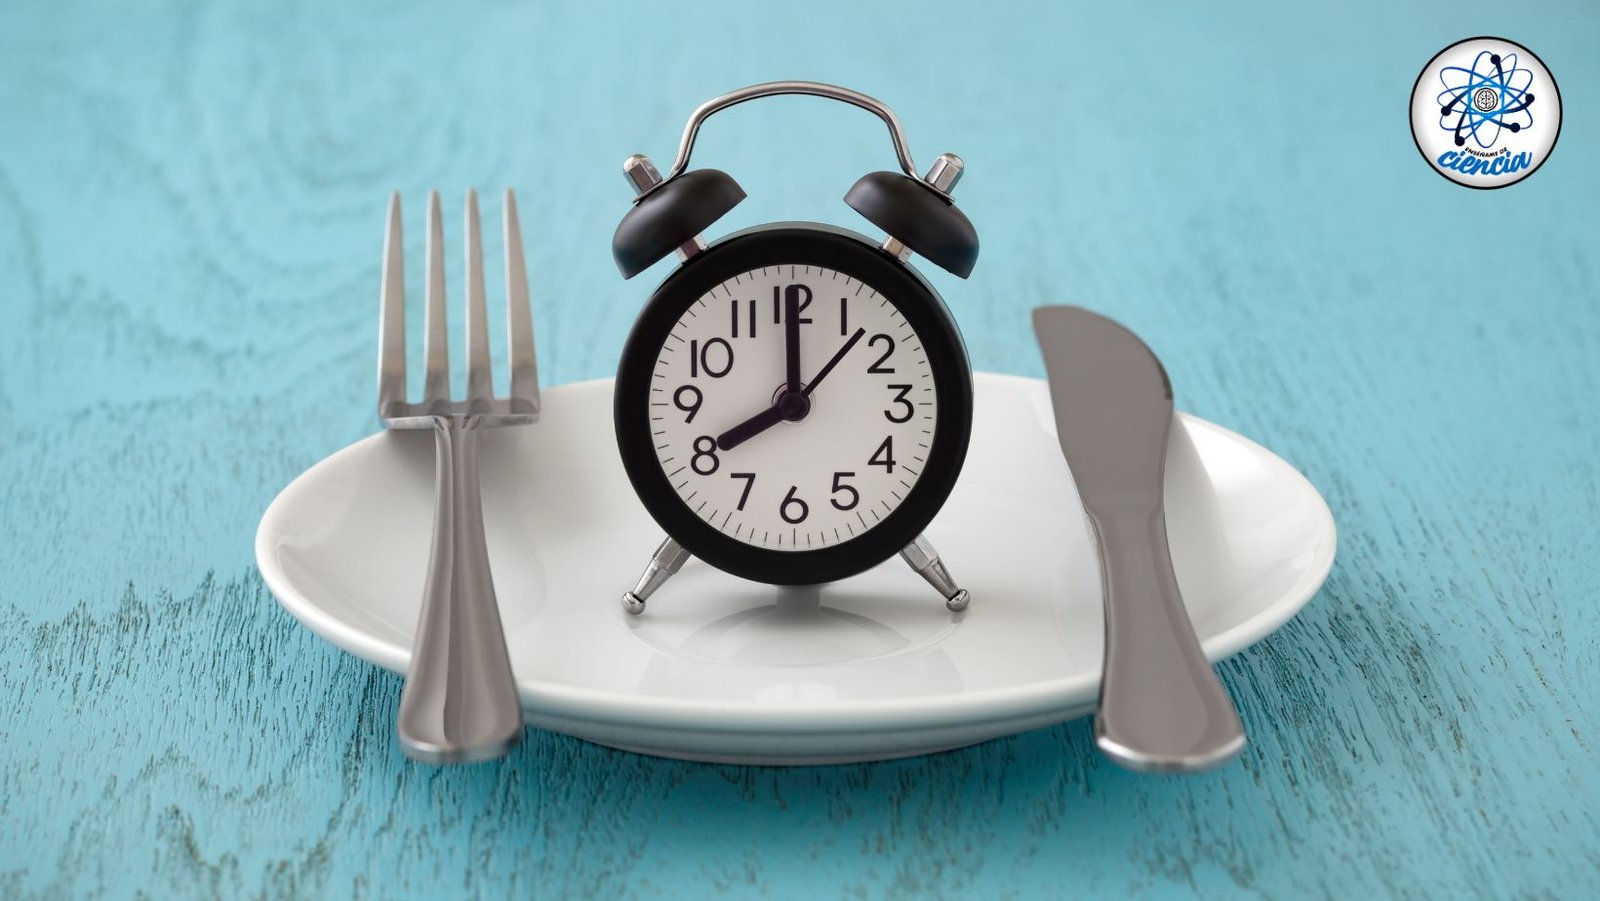 La hora a la que comes: Impacta en tu longevidad según Science